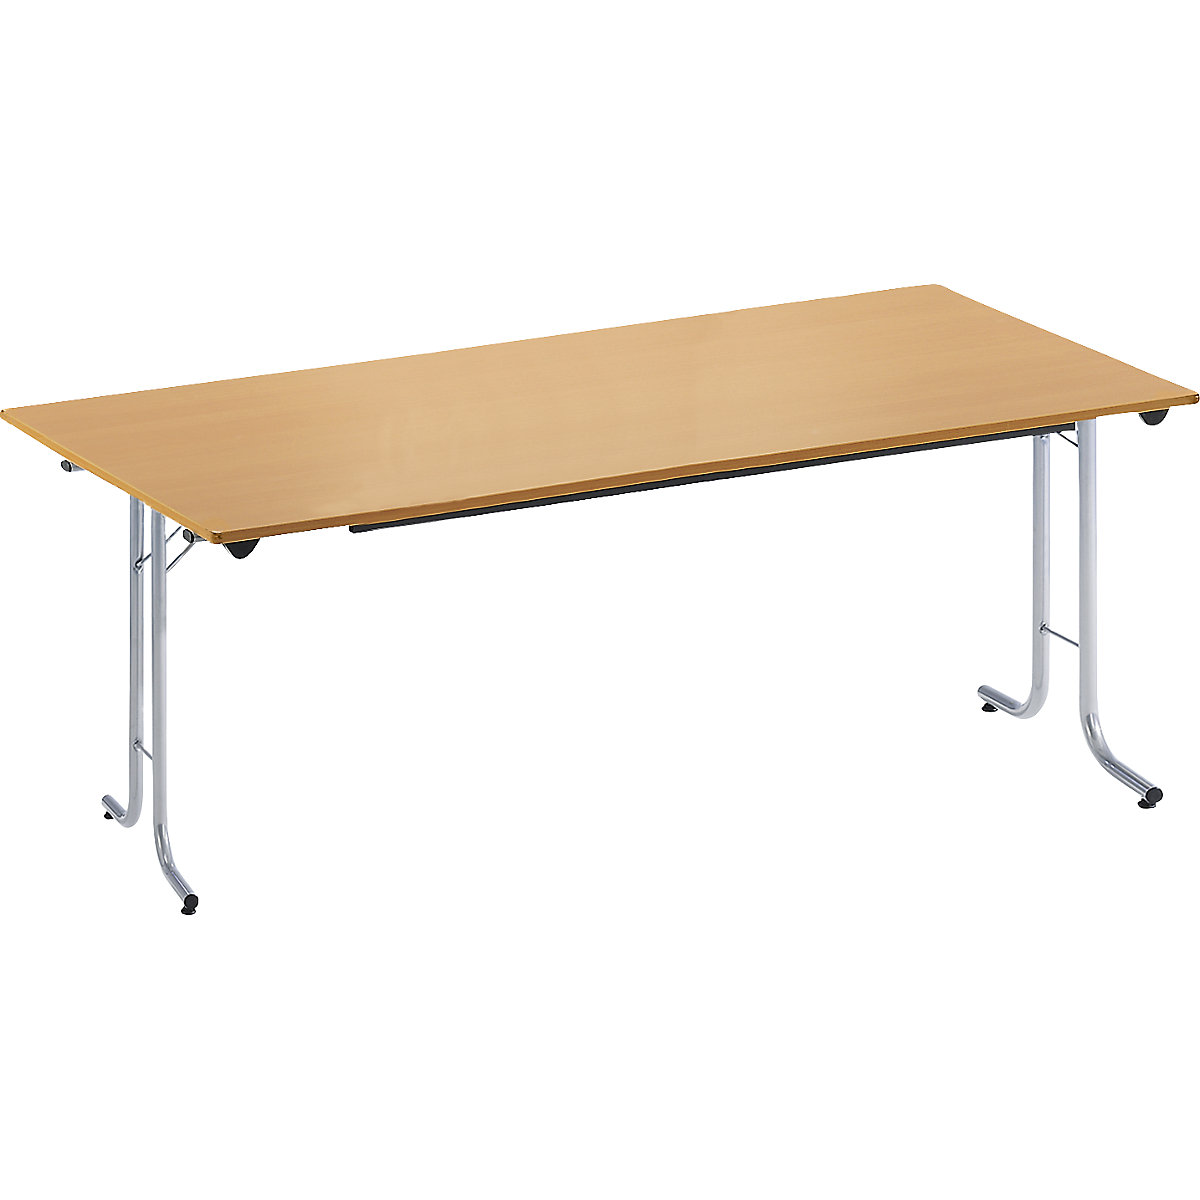 Inklapbare tafel, met afgeronde randen, tafelpoten van staalbuis, bladvorm rechthoekig, 1600 x 700 mm, frame aluminiumkleurig, blad beukenhoutdecor-4